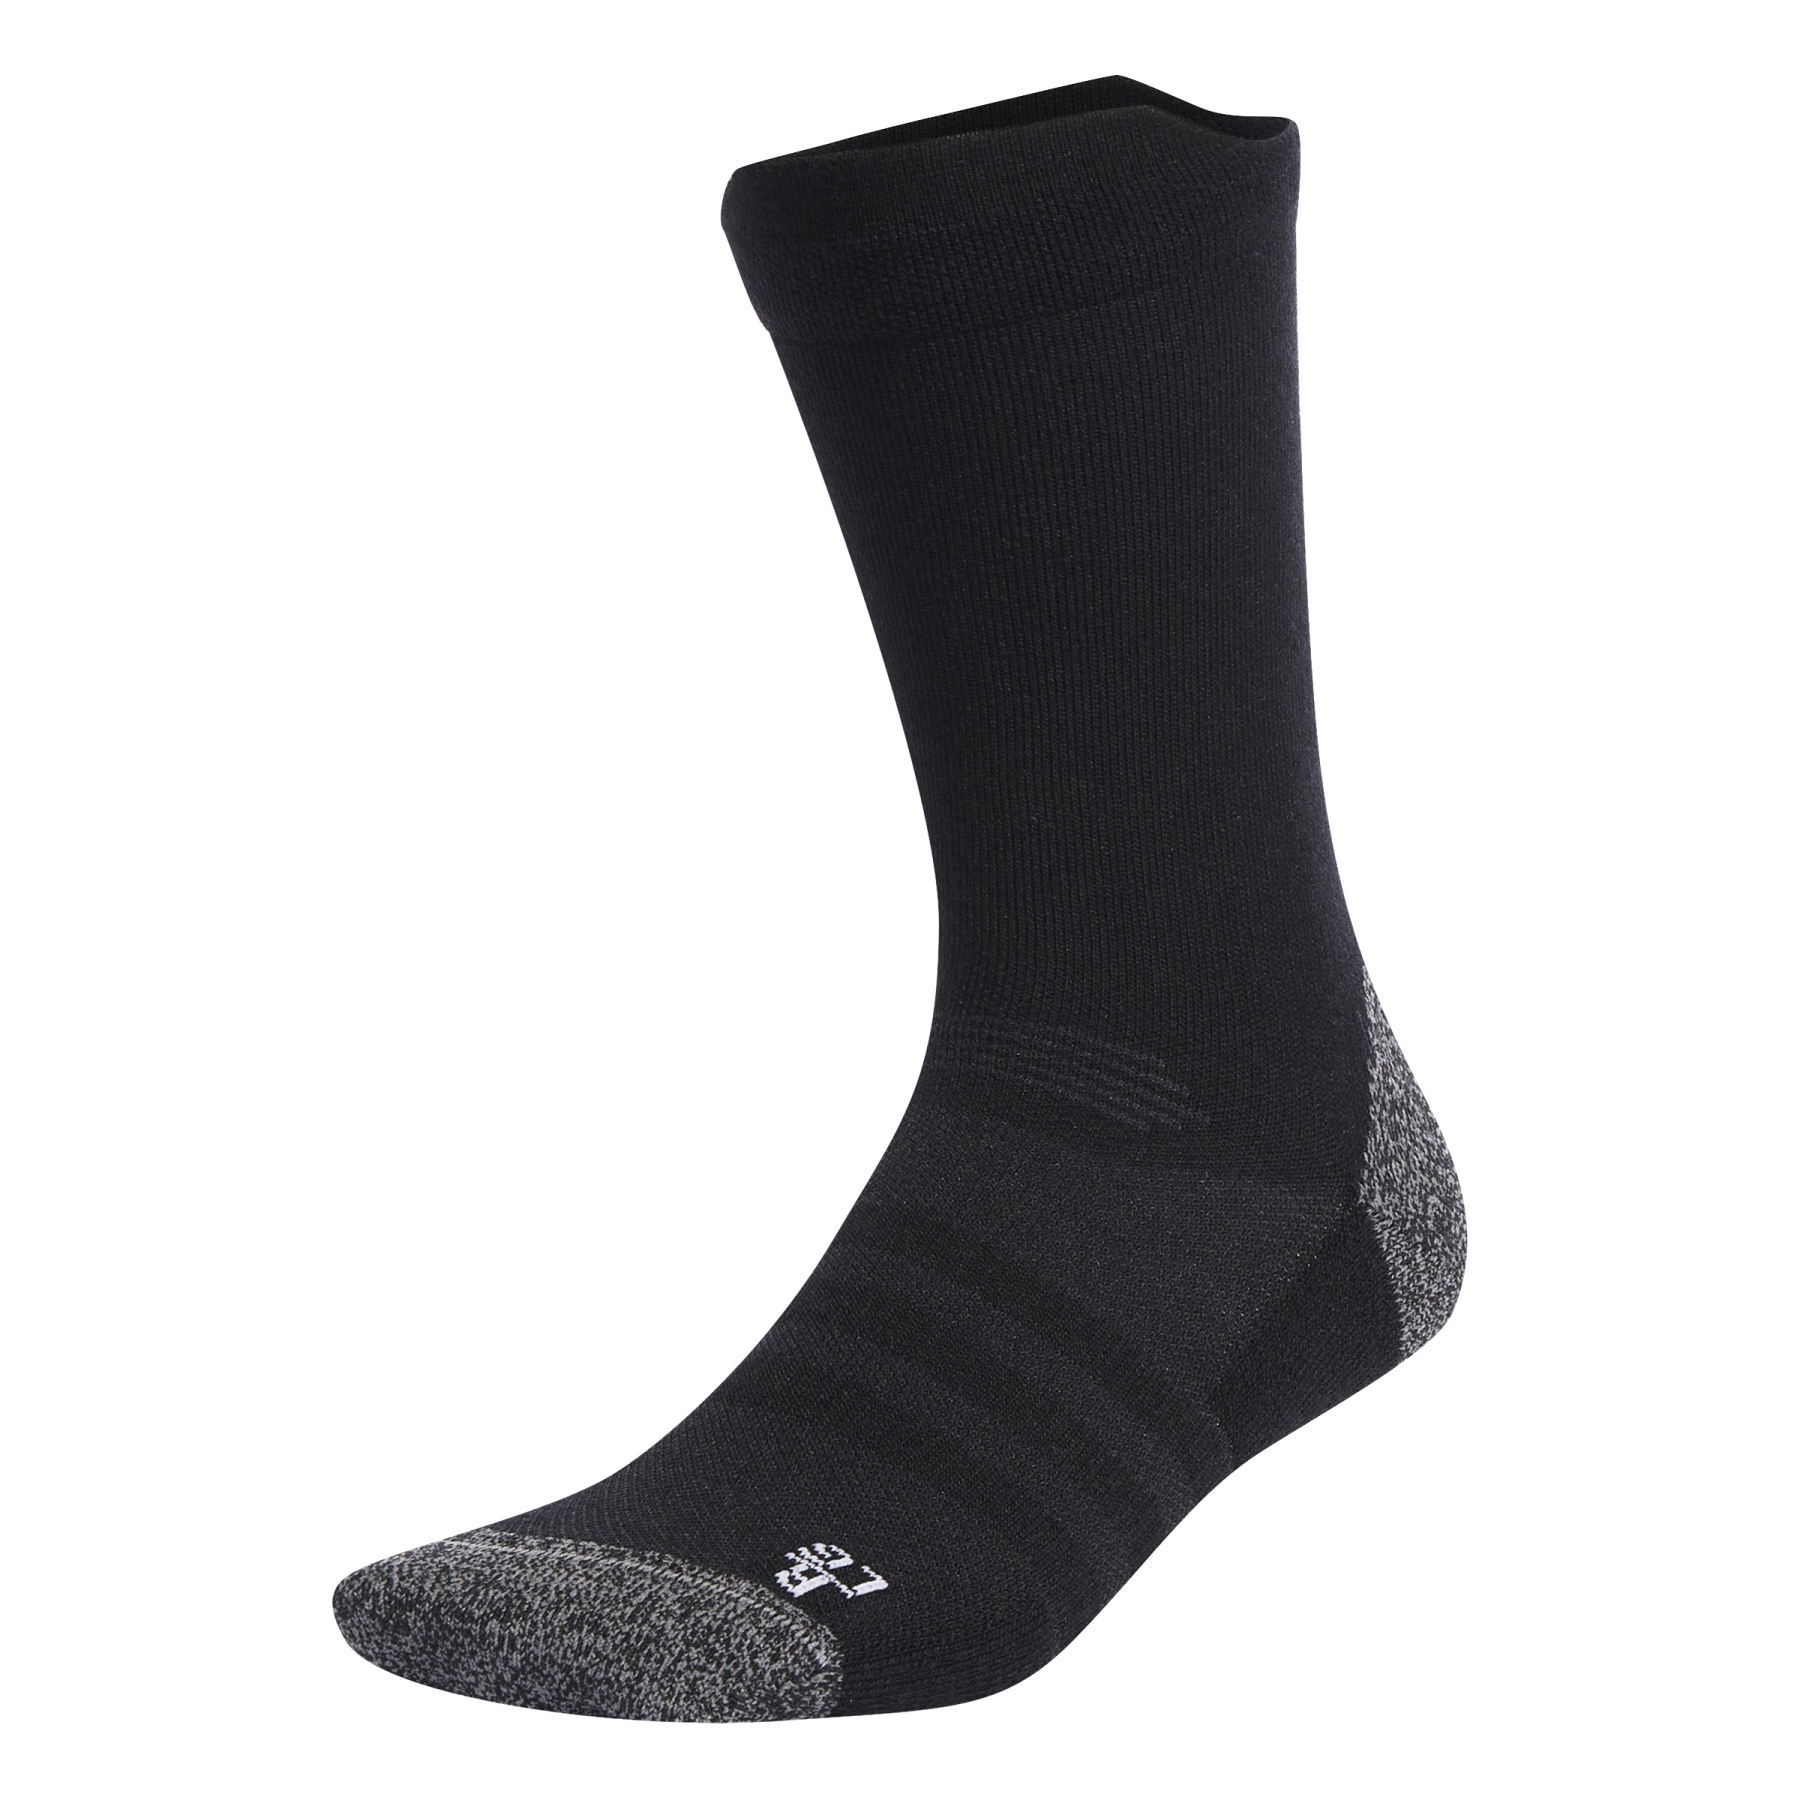 Produktbild von adidas TERREX COLD.RDY Wool Crew Socken Damen - schwarz/weiss HB6244